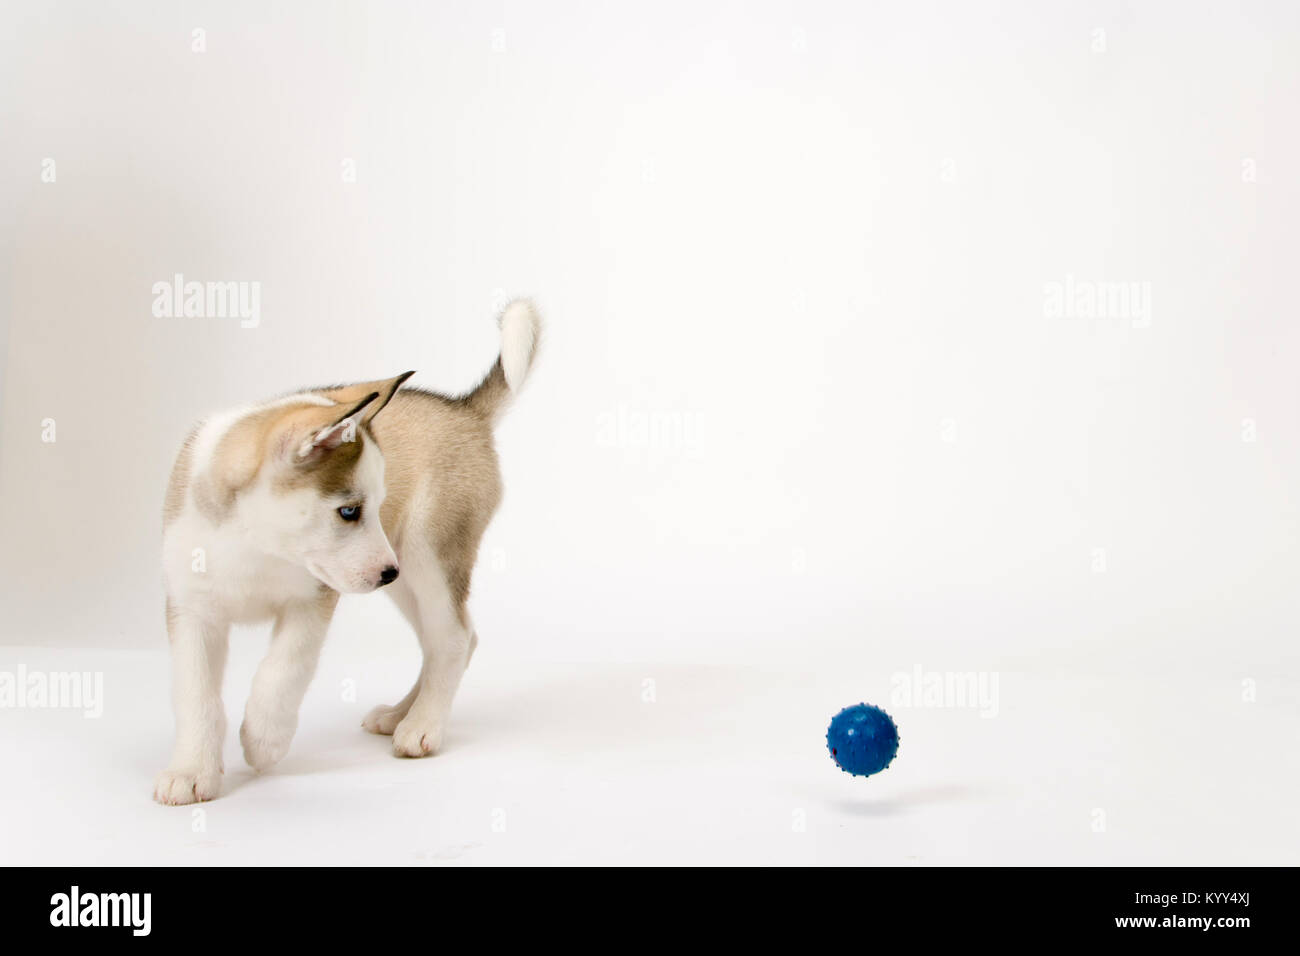 Fluffy jeune chiot Husky montres un ballon sauteur Photo Stock - Alamy